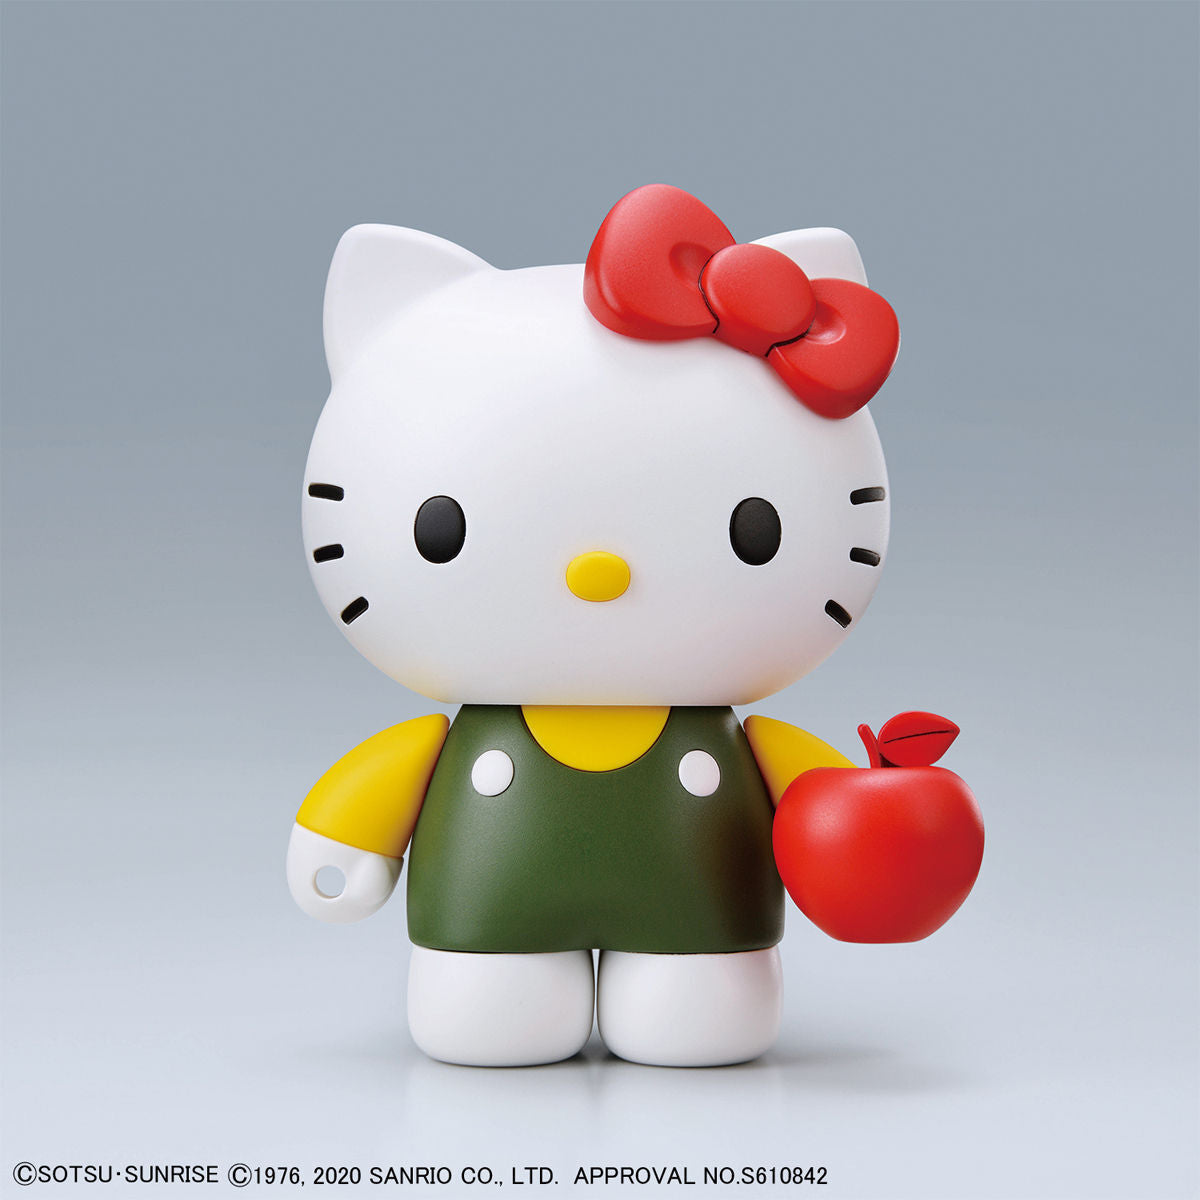 Hello Kitty Zaku II